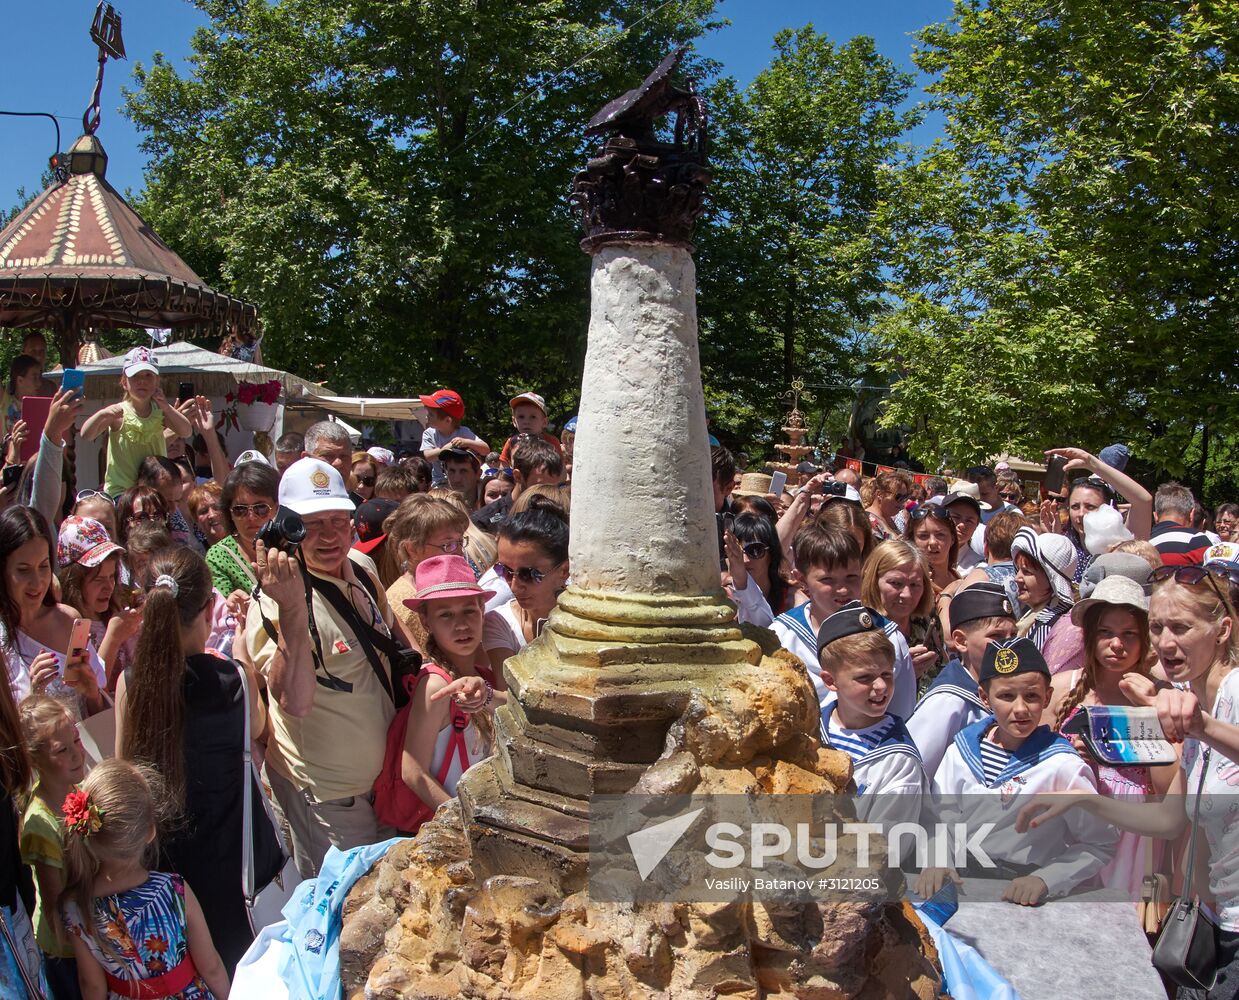 Crimean ice cream festival in Sevastopol